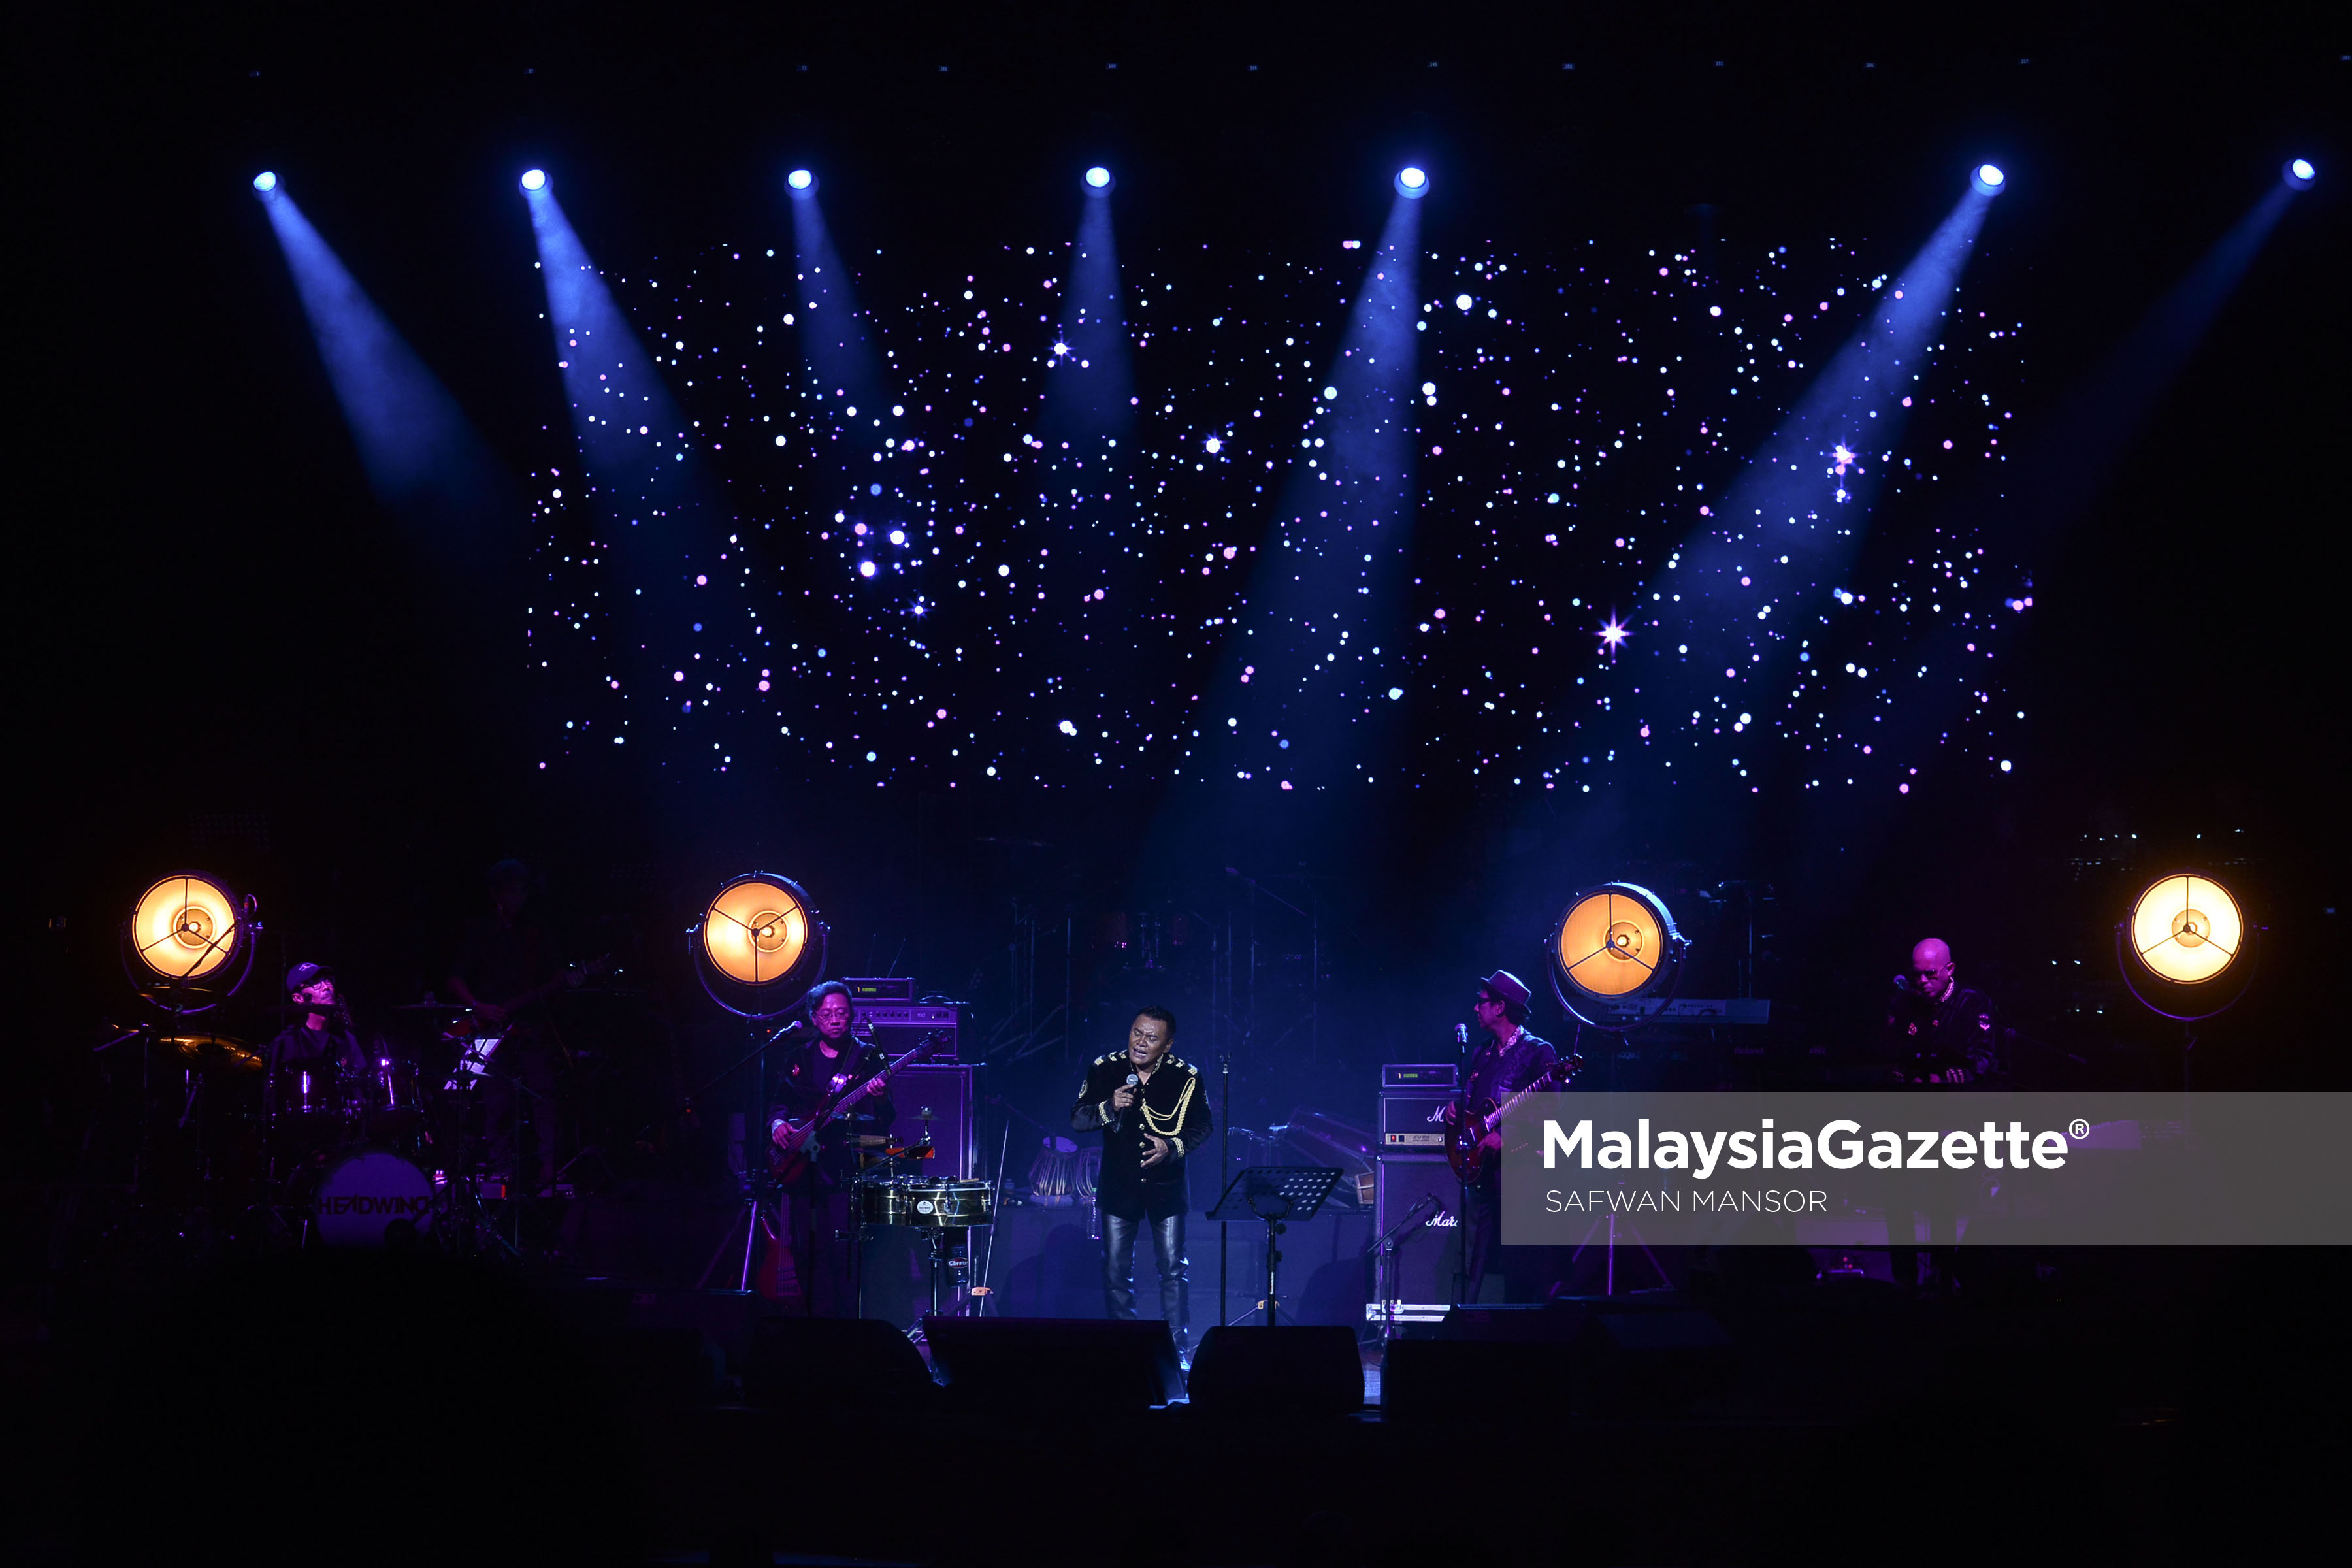 Kumpulan Headwind pada Konsert The Musical Journey of Zainal Abidin sempena ulang tahun ke 35 Kumpulan Headwind di Dewan Plenary, Pusat Konvensyen Kuala Lumpur. foto SAFWAN MANSOR, 25 FEBRUARI 2017